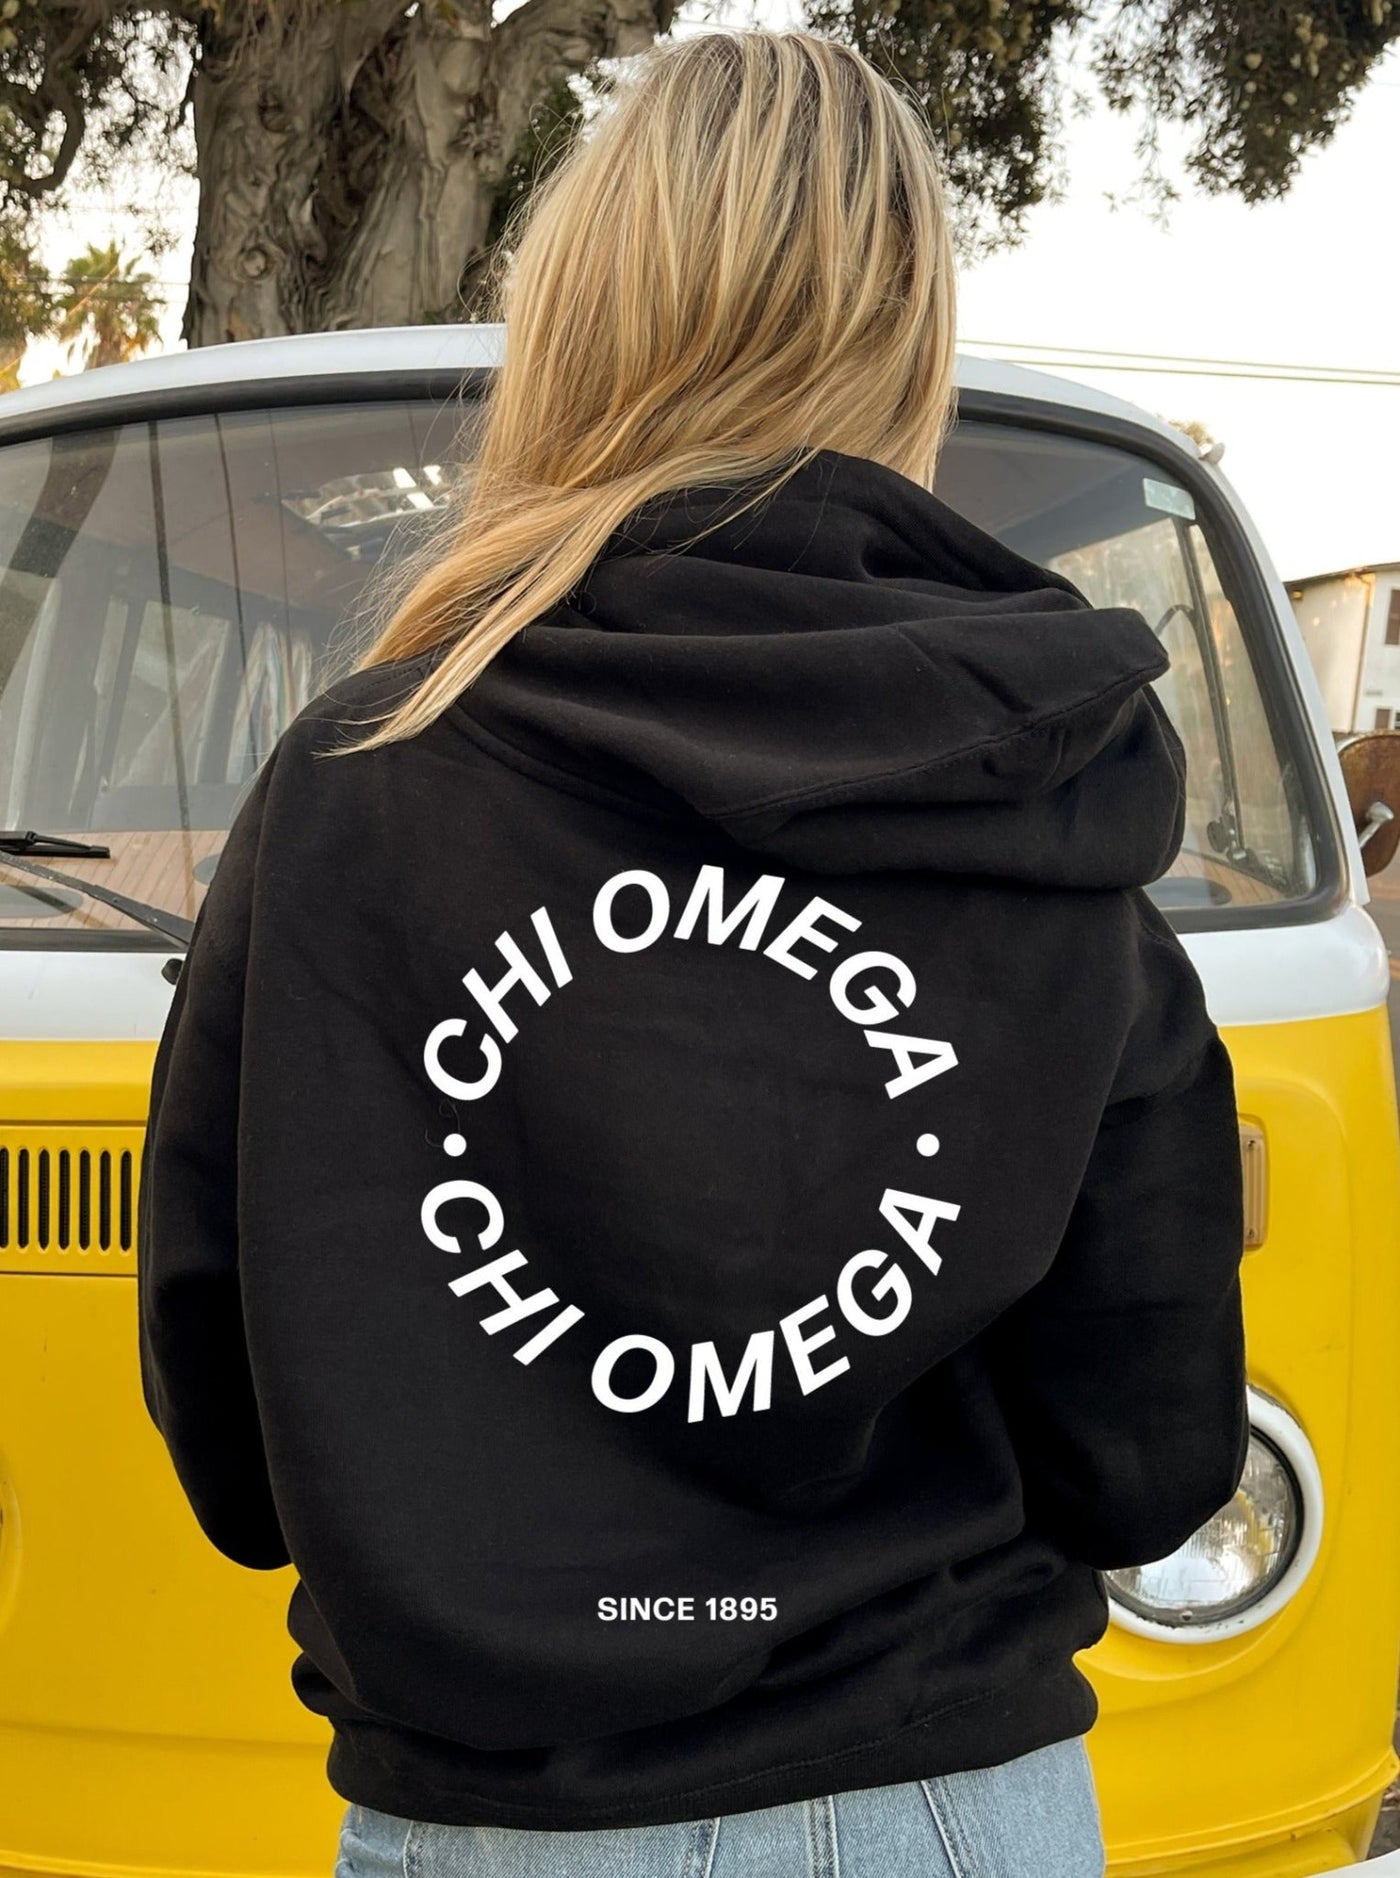 Chi Omega Simple Trendy Cute Circle Sorority Hoodie Sweatshirt Design Black